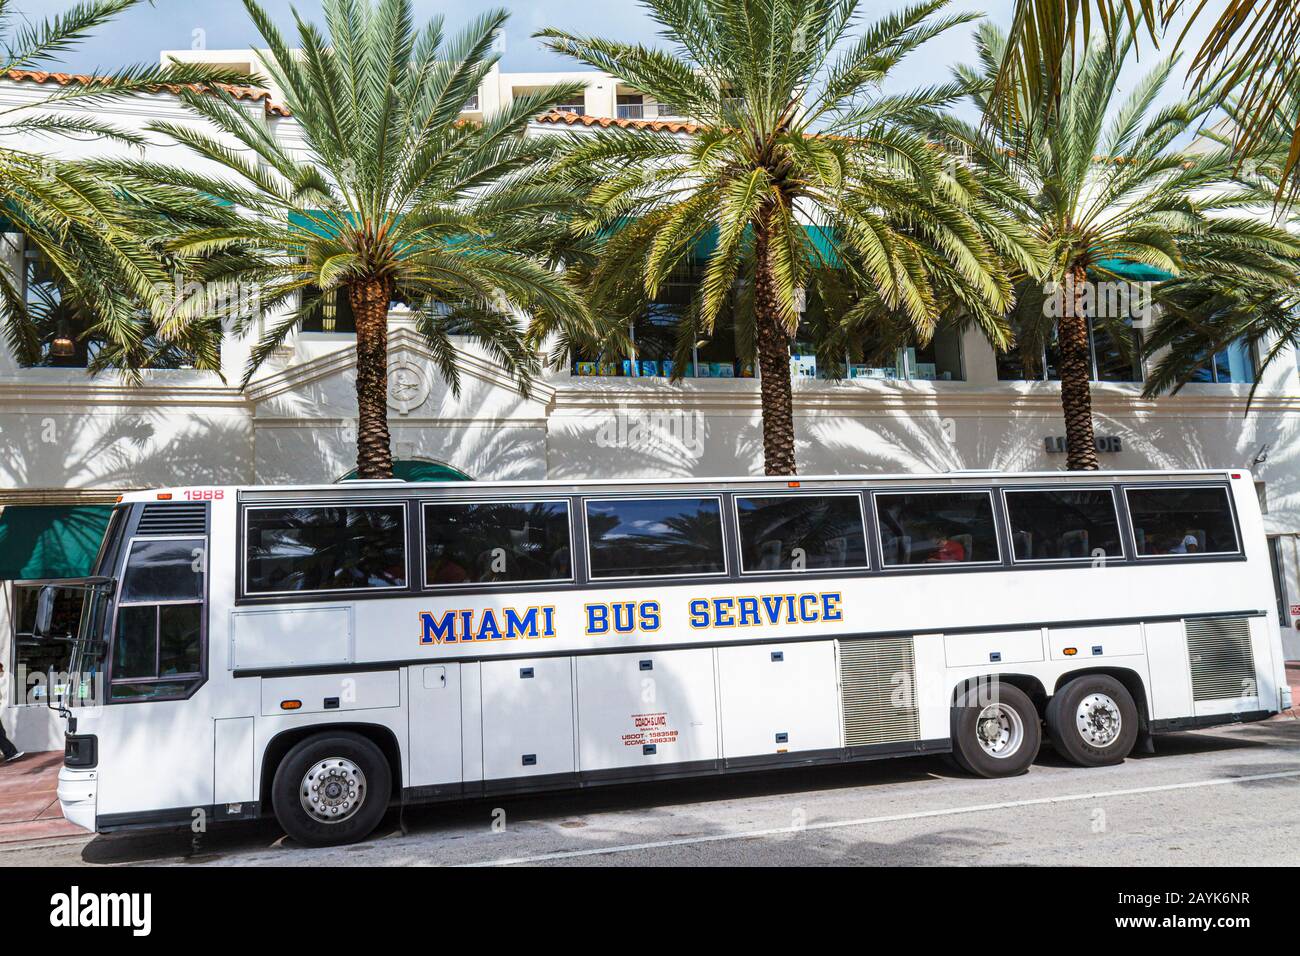 Miami Beach Florida,Fifth 5th Street,car,bus, car, les visiteurs voyage Voyage tourisme touristique sites touristiques culture culturelle, vacances Banque D'Images